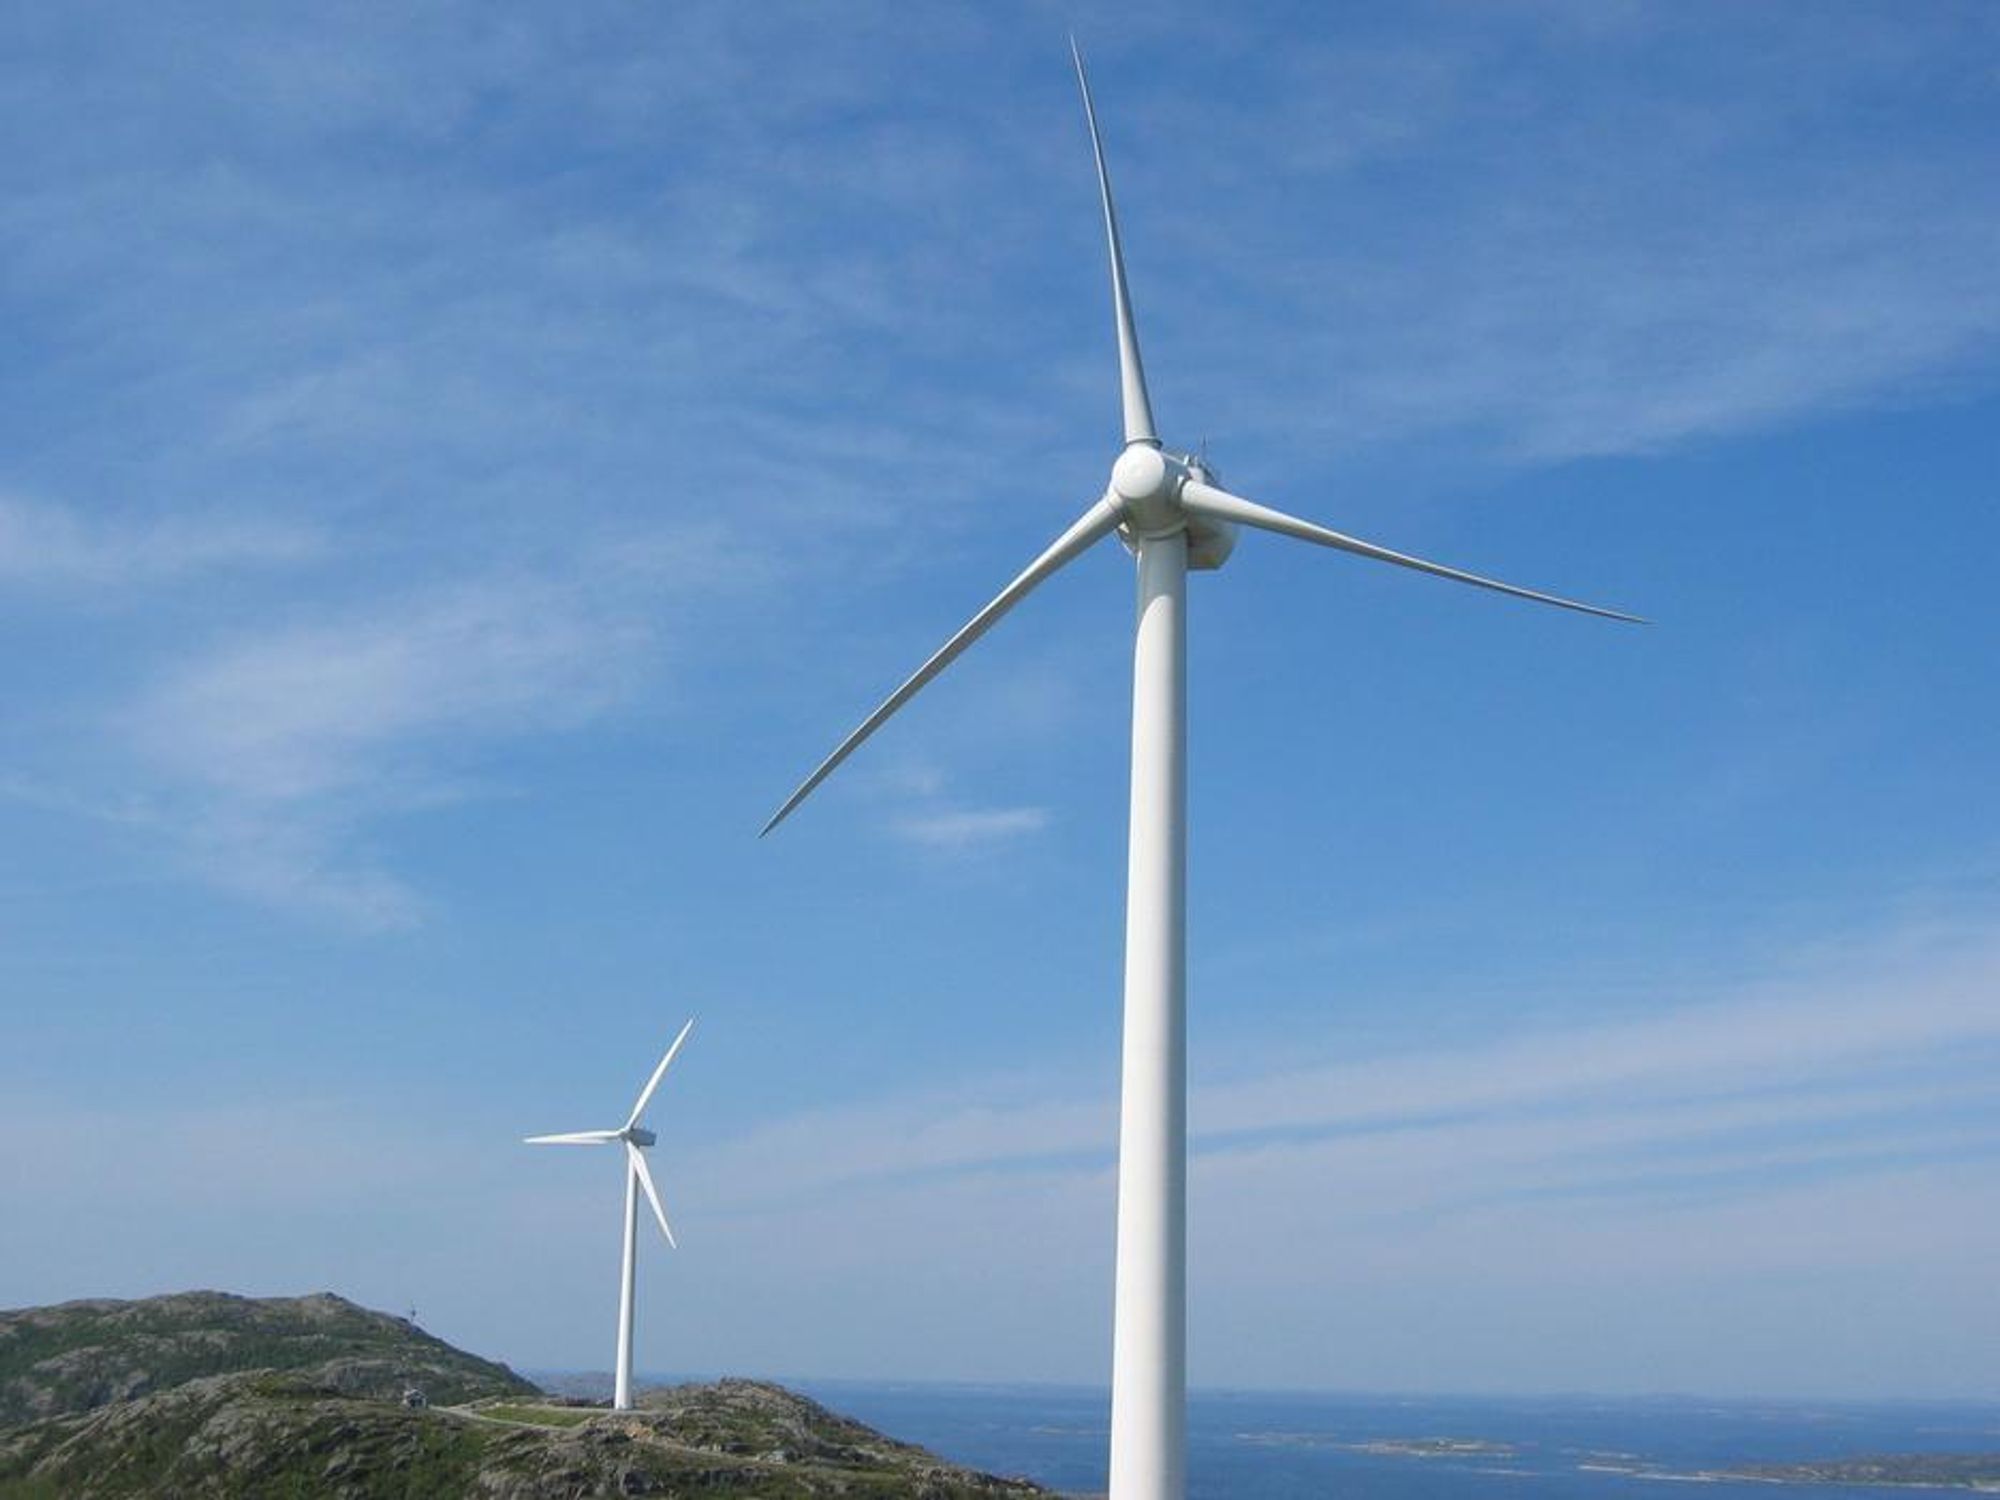 Knepent ja til vindkraft på Frøya